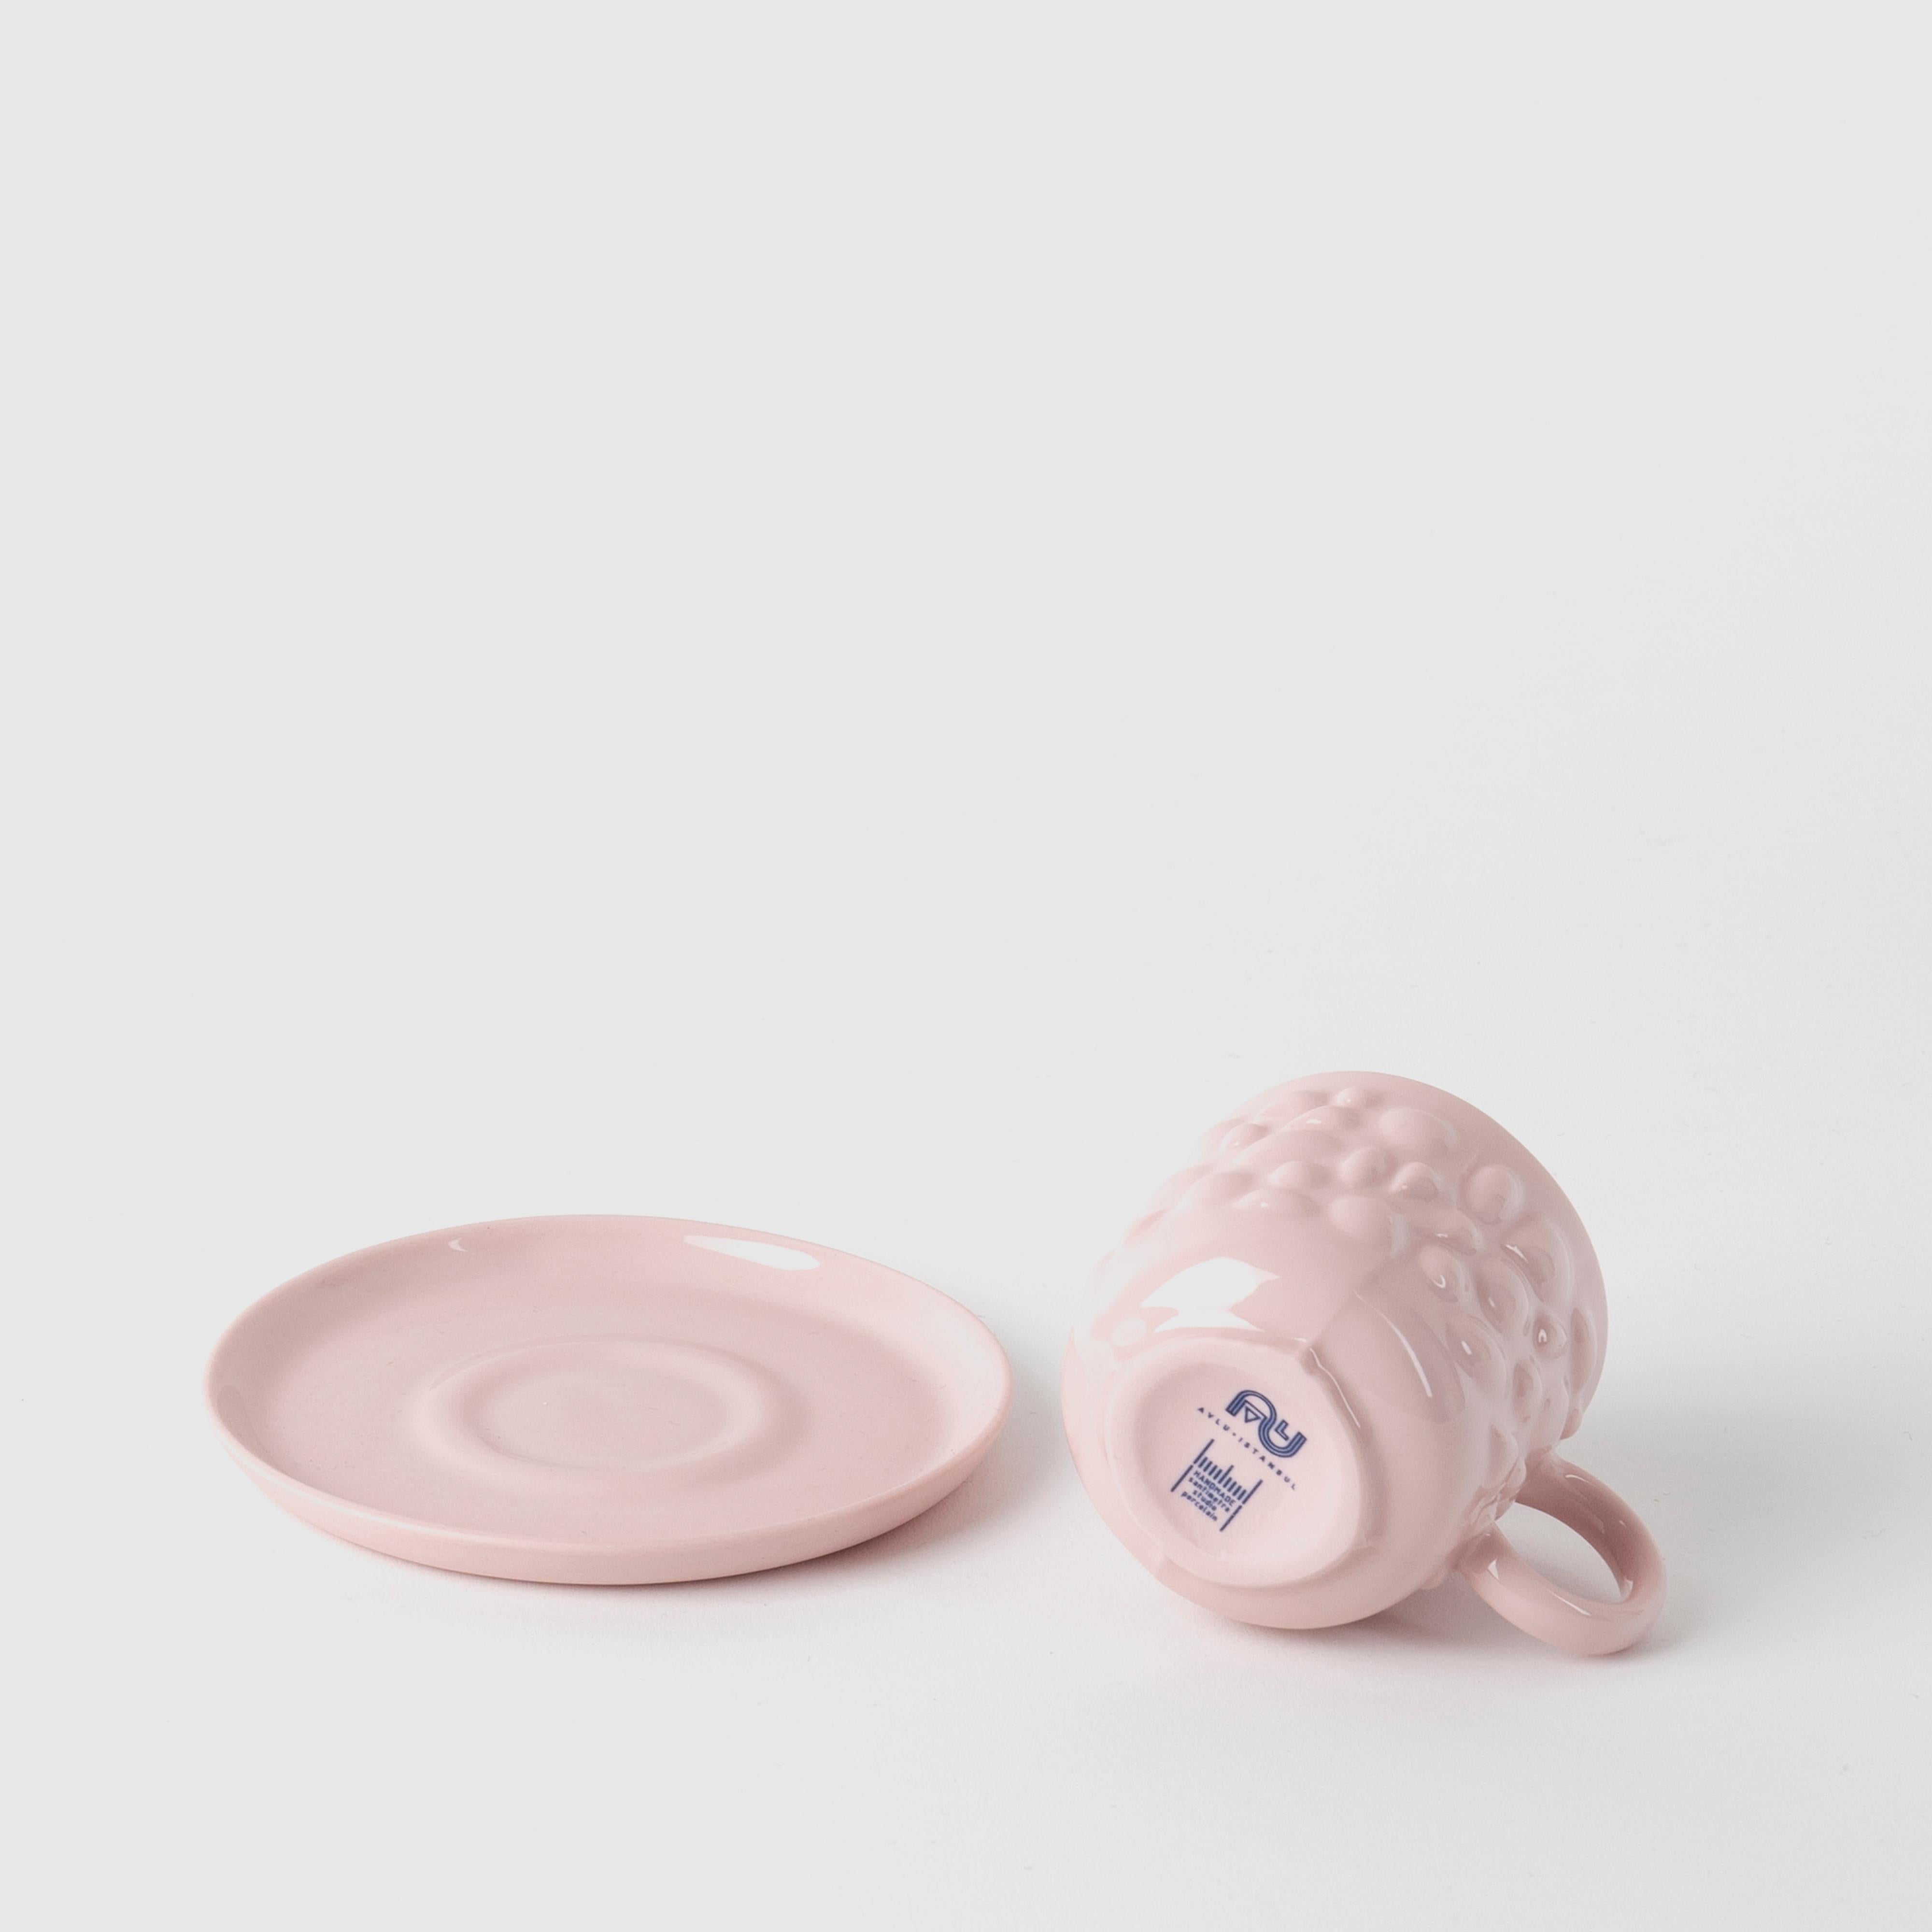 Les pièces de porcelaine de Justine sont inspirées des anciens bijoux byzantins. La porcelaine délicate transforme les tasses en objets de design intemporels en traduisant les détails en perles et en pierres des bijoux en formes fluides.

Avec ses